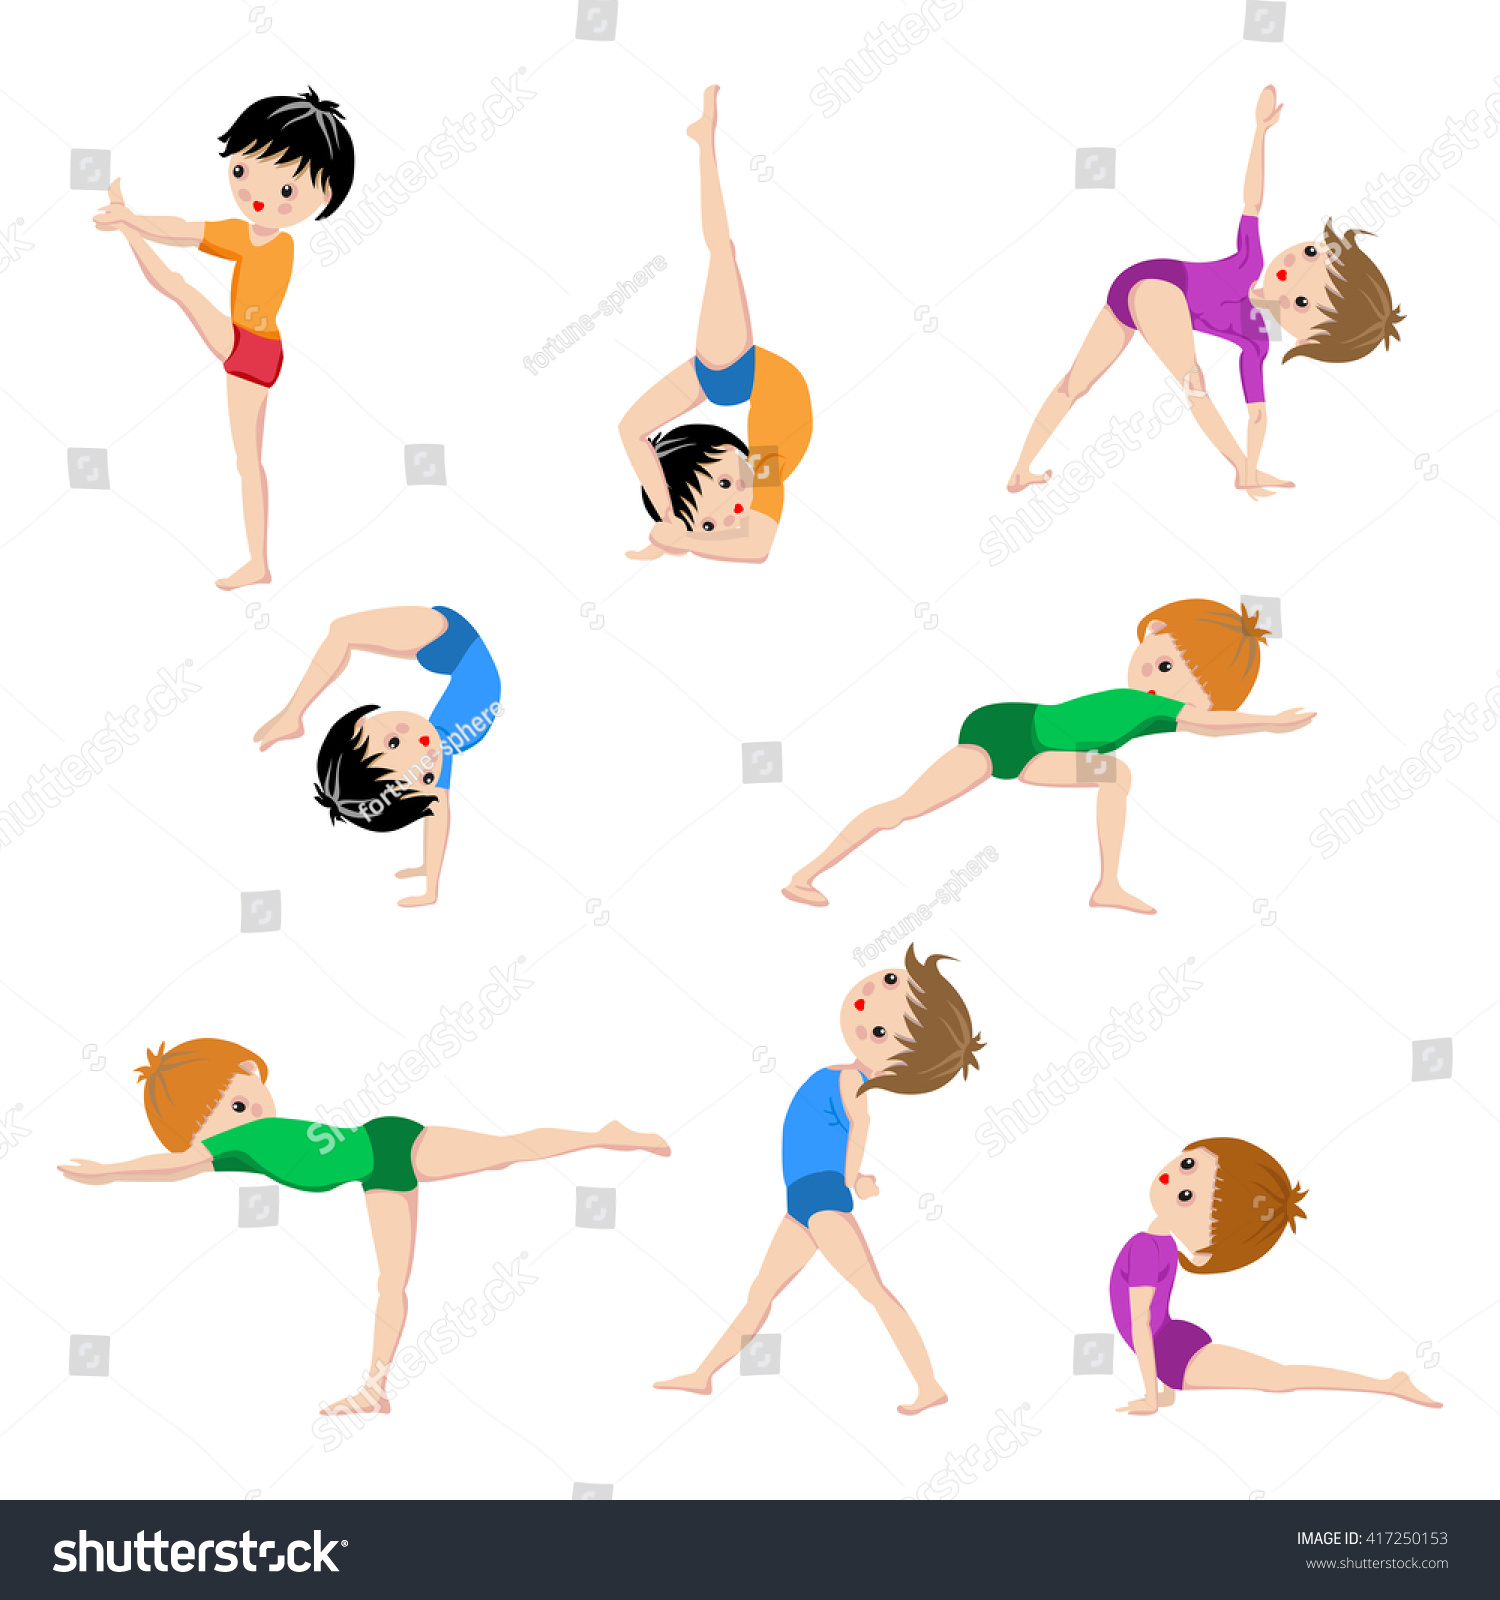 Healthy Kids Yoga Poses Gymnastics Healthy Stock Vector 417250153 ...